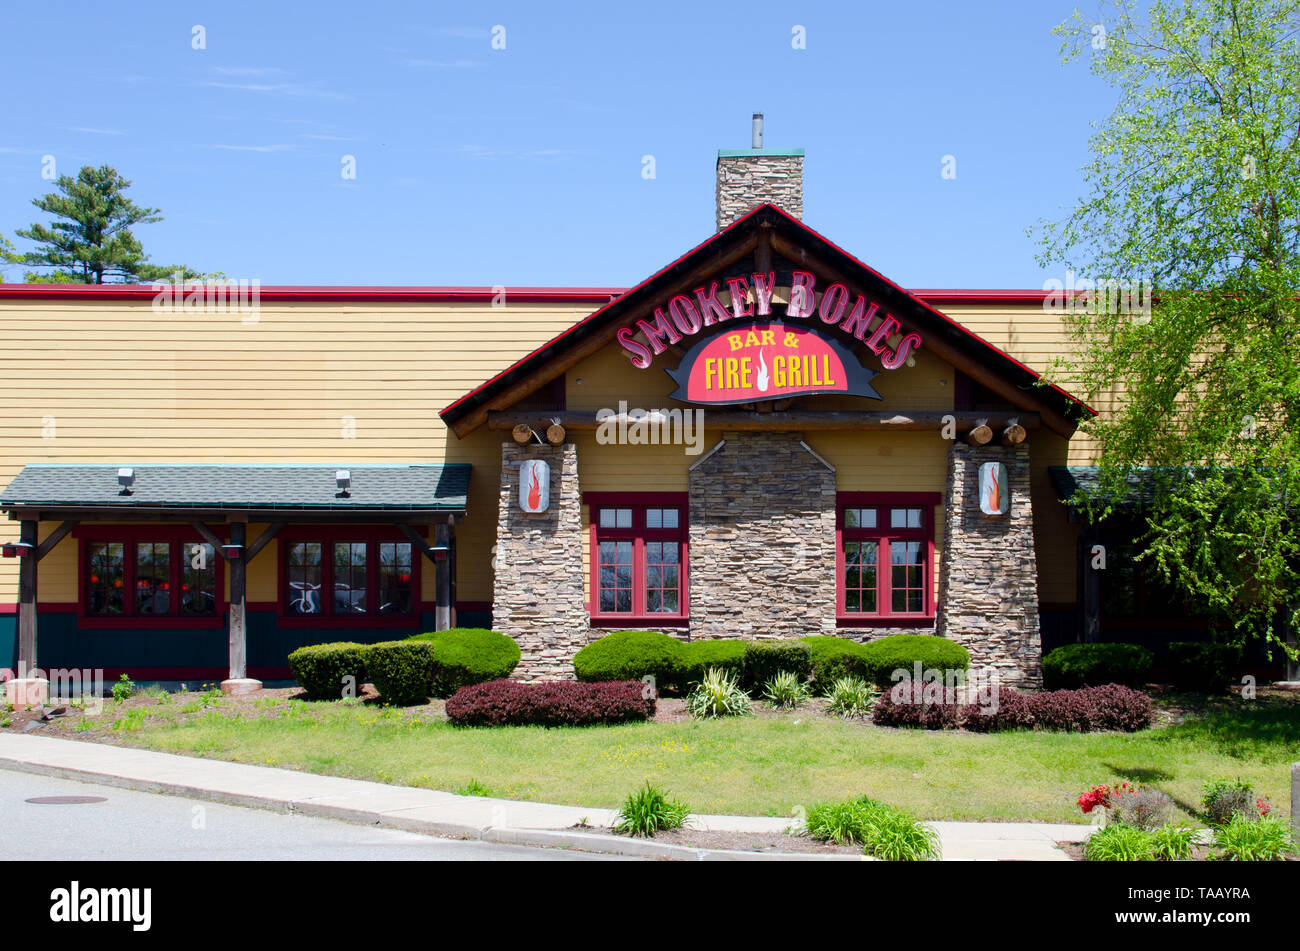 Smokey Bones ristorante, bar & fire grill barbeque catena in Stoughton, Massachusetts, STATI UNITI D'AMERICA Foto Stock